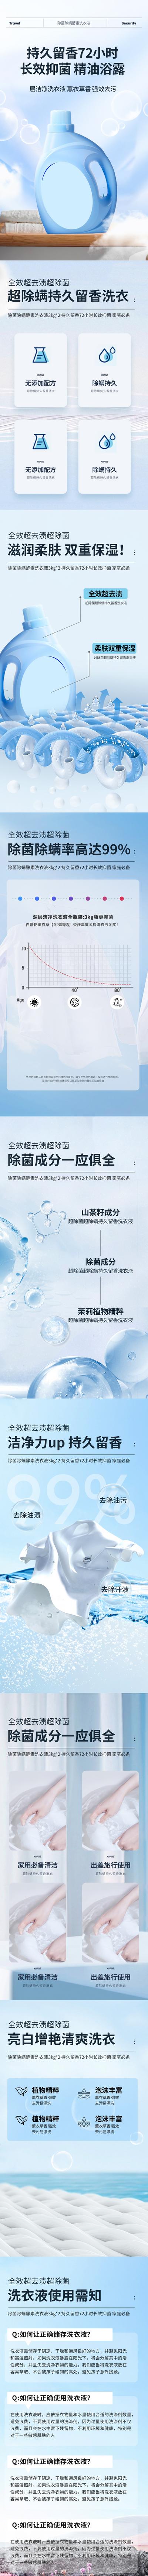 南门网 广告 海报 电商 洗衣液 详情页